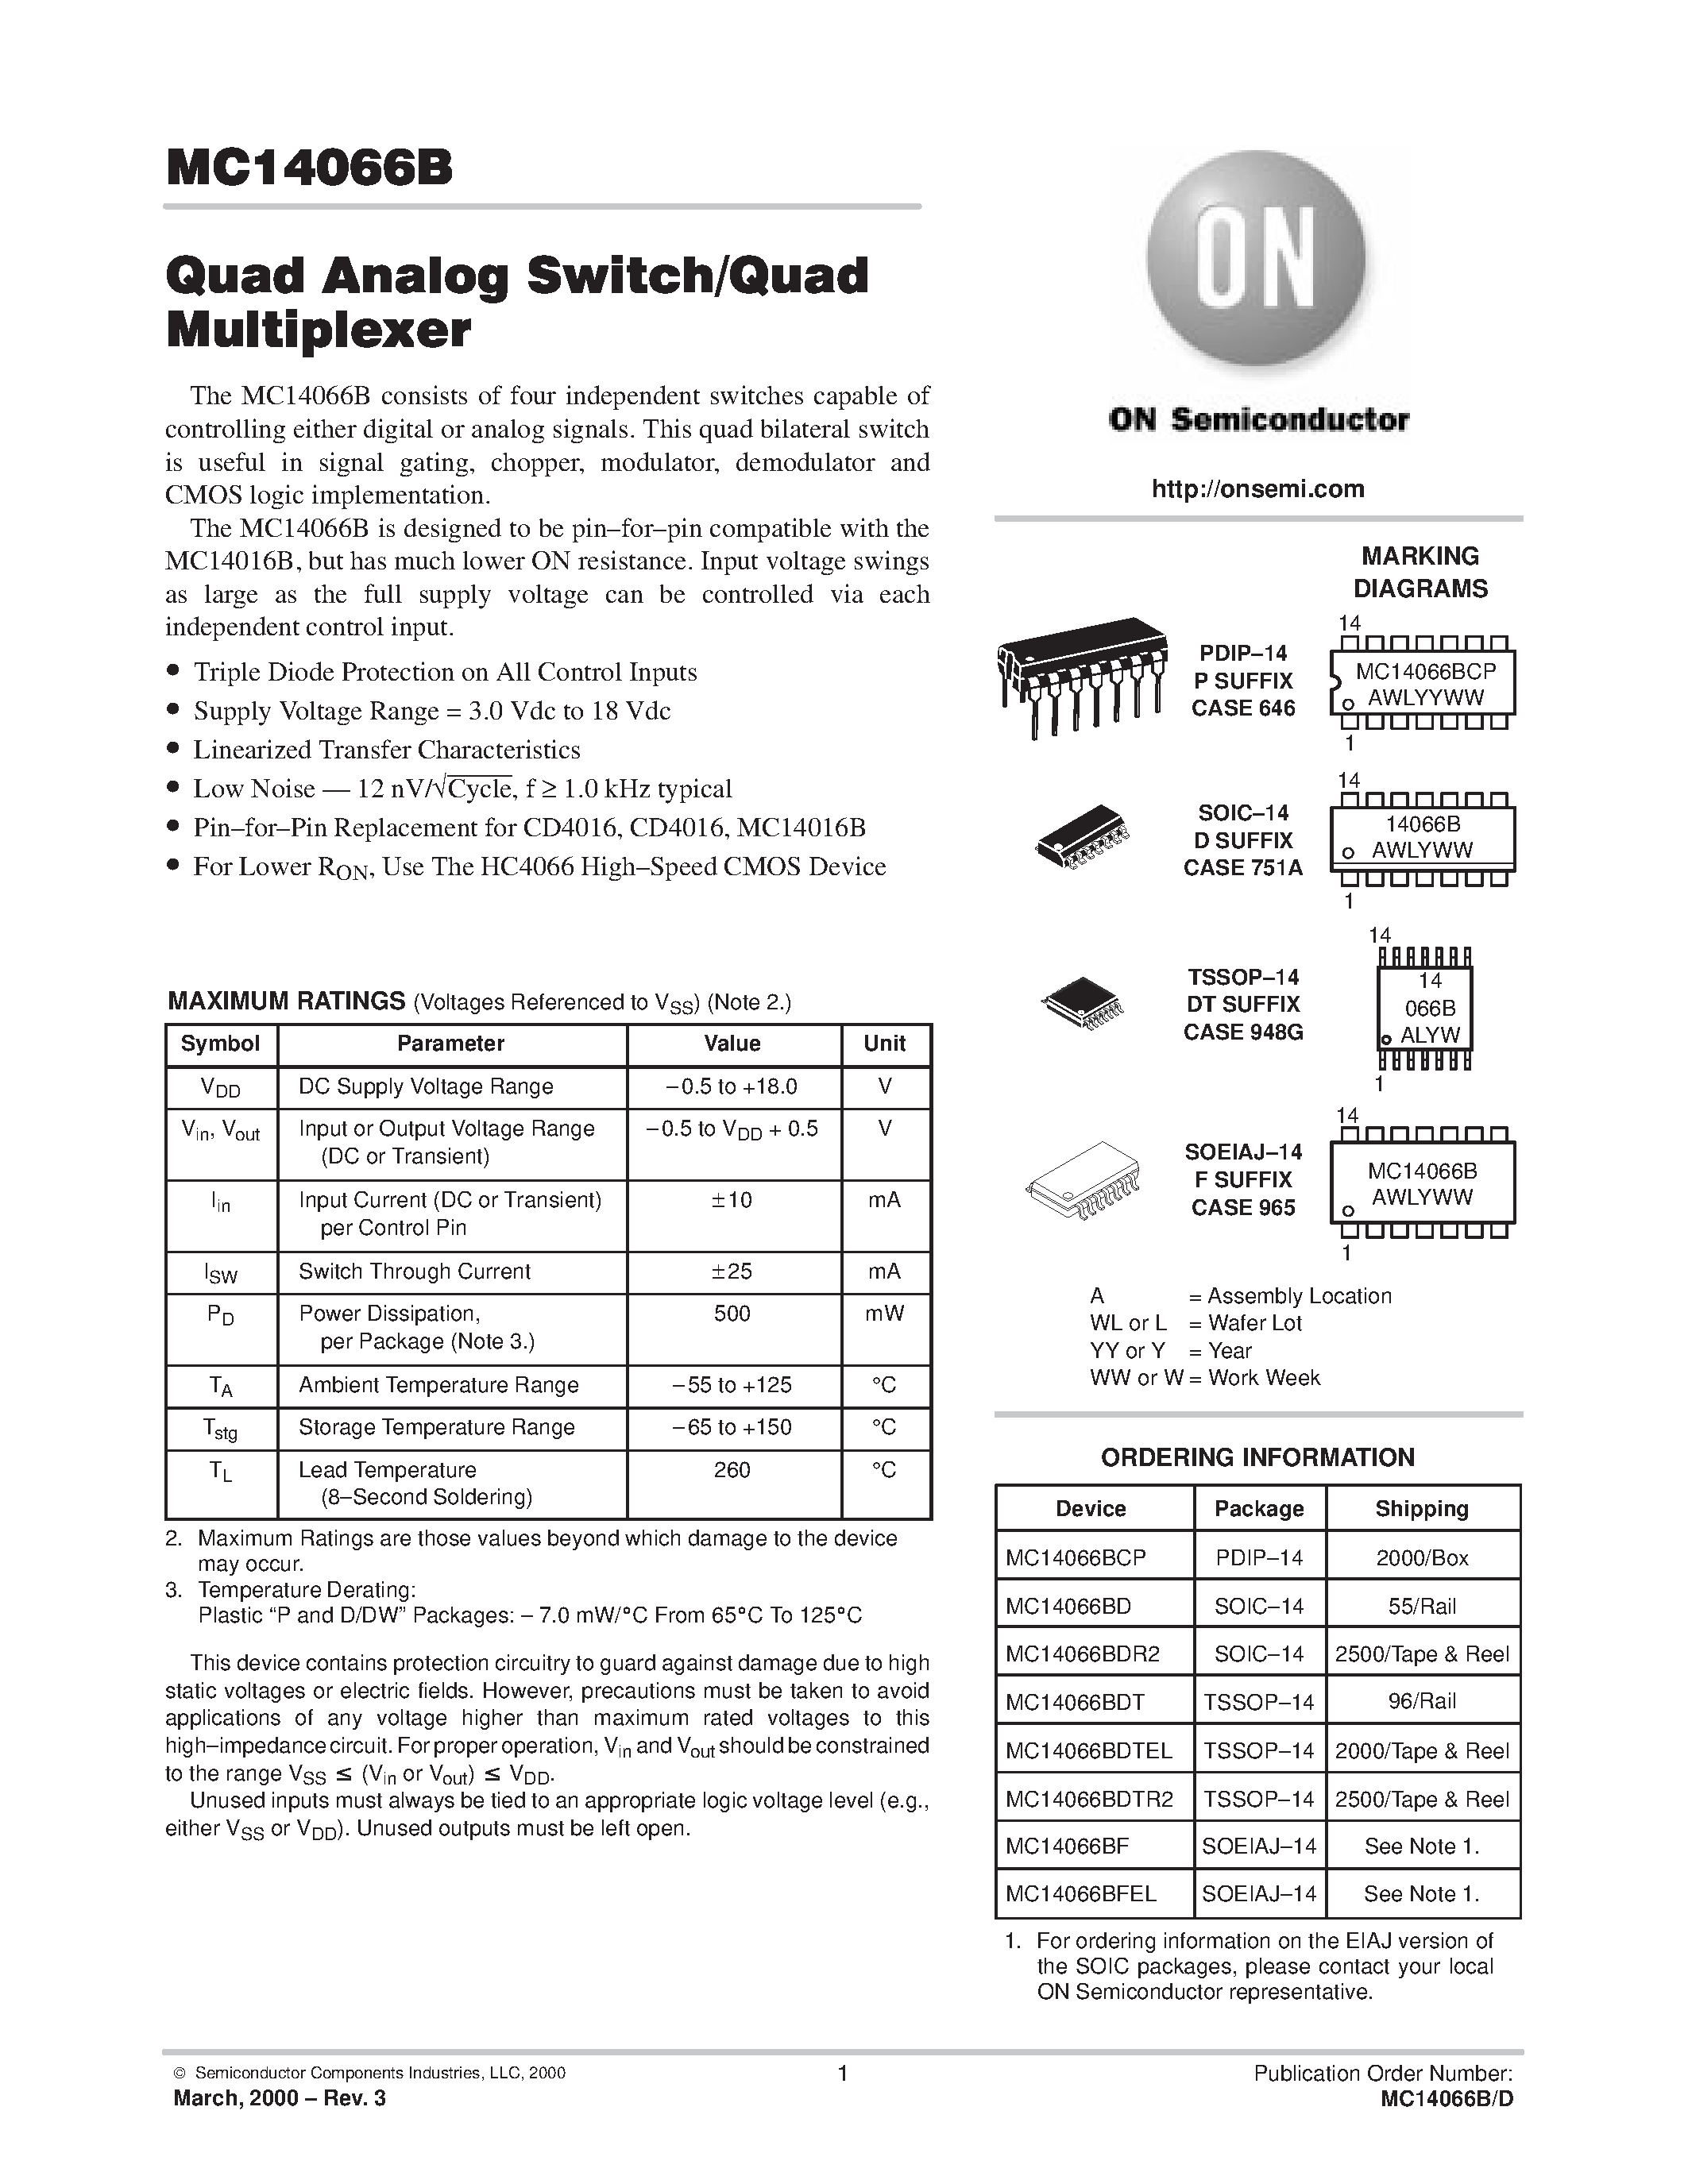 Datasheet 4066 - Quad Analog Switch/Quad Multiplexer page 1